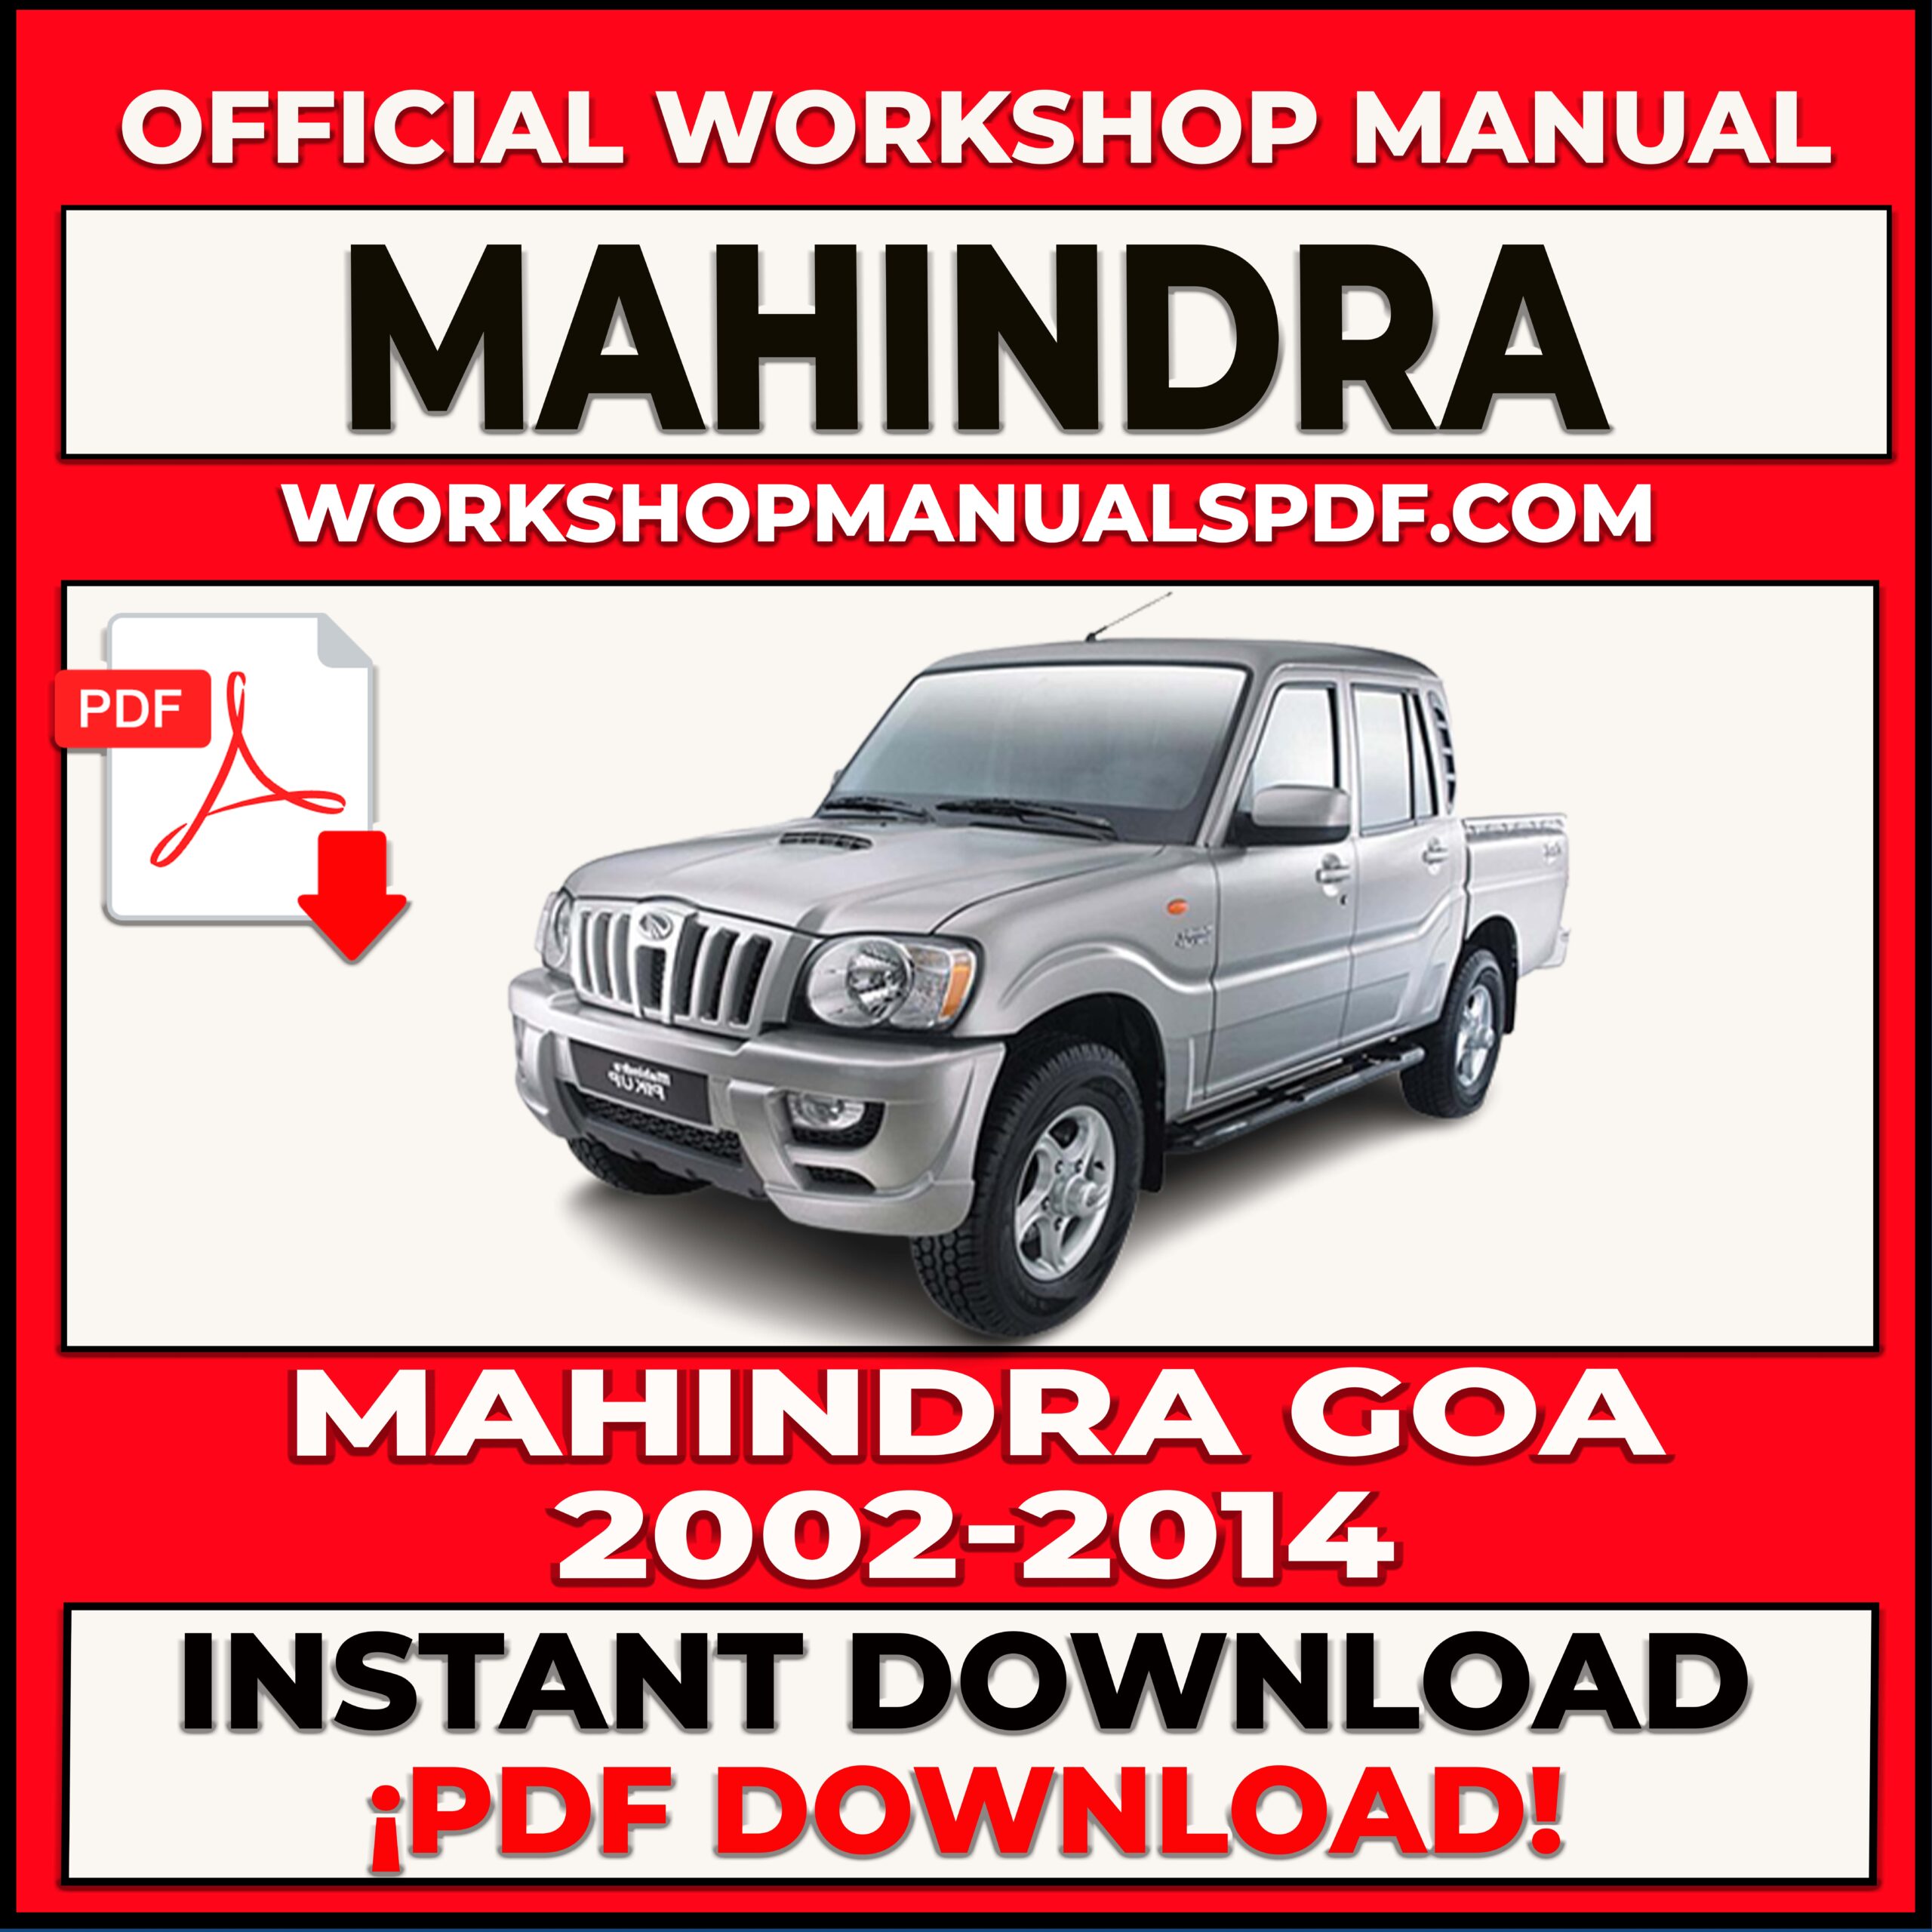 Mahindra Goa 2002-2014 Workshop Repair Manual